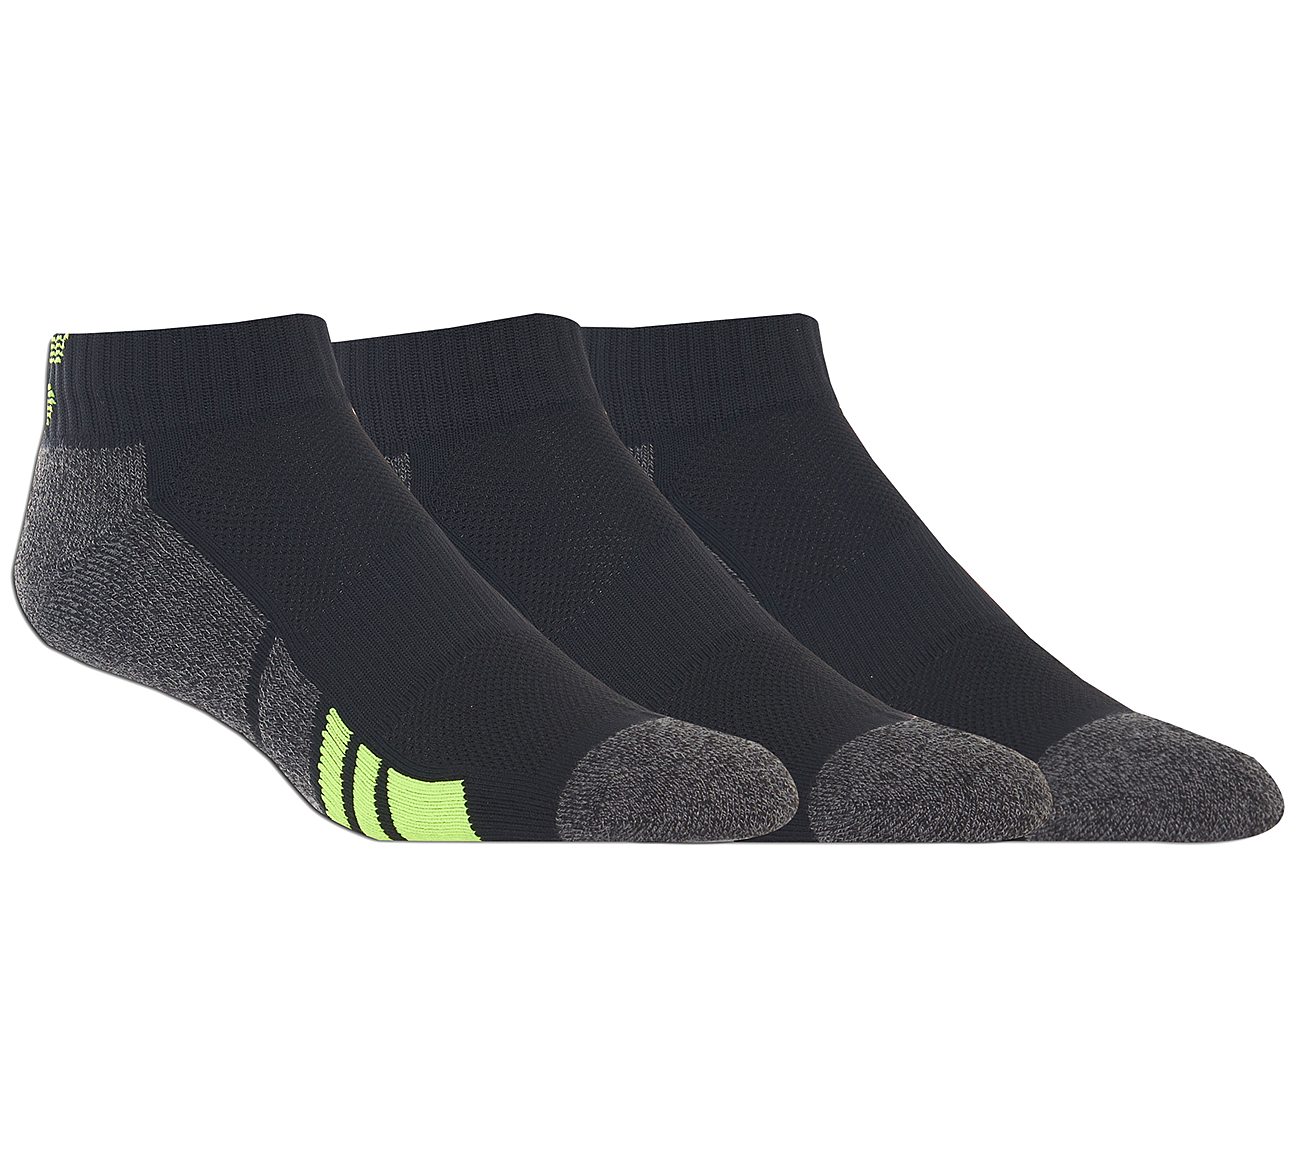 nylon athletic socks